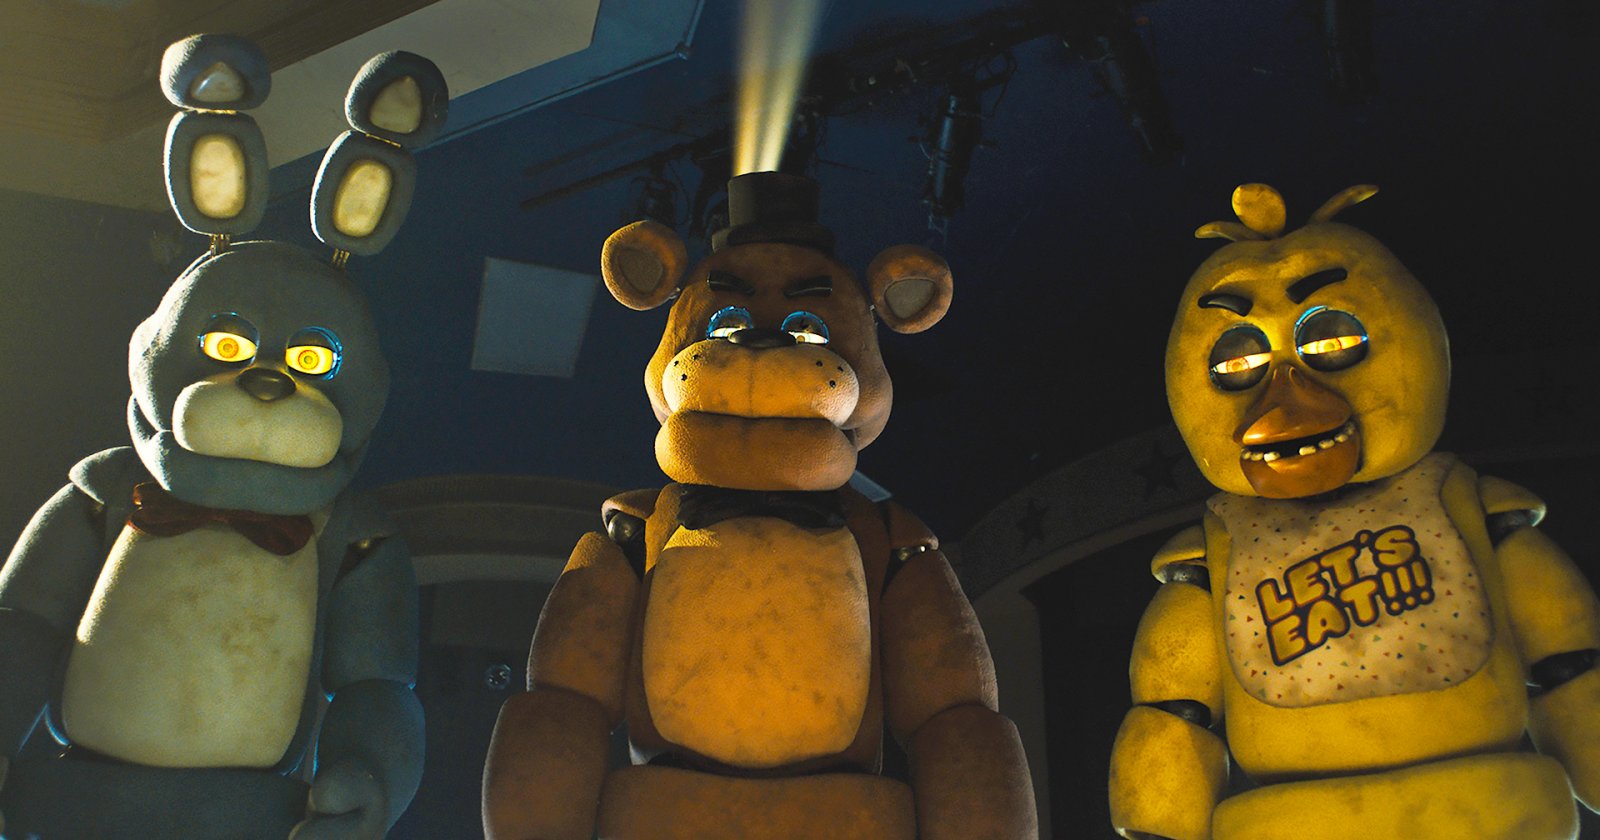 เกินคาด! ‘Five Nights at Freddy’s’ ทุบสถิติเปิดตัวช่วงฮาโลวีน เล็งทำเงินถึง 78 ล้านเหรียญ